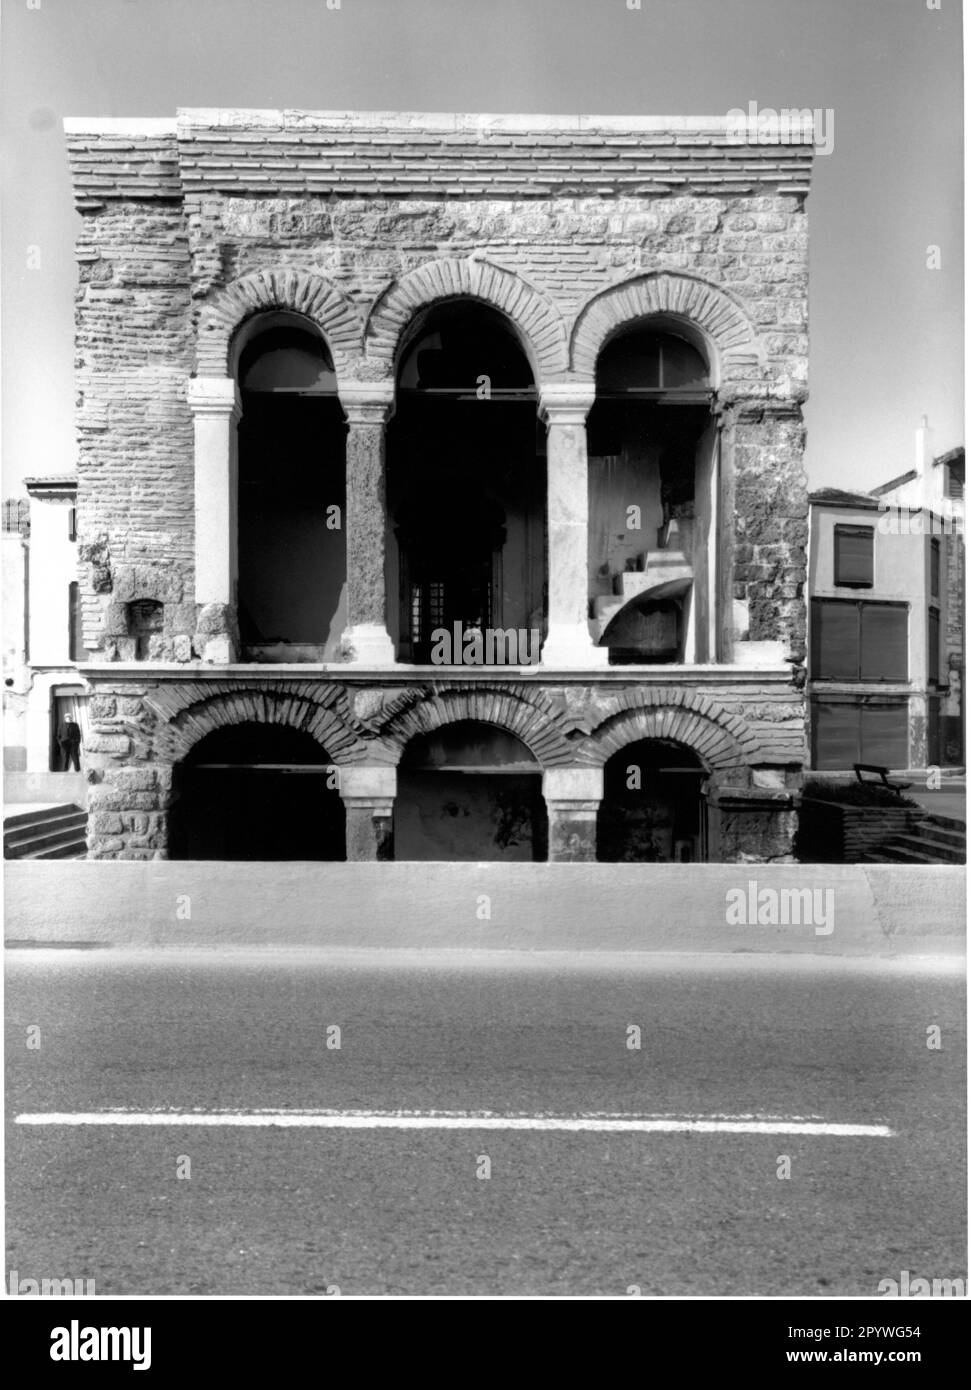 Istanbul (Türkei). Kontraste: Alt - neu. Ruinen eines Gebäudes aus osmanischer Zeit an einer Flussstraße am Goldenen Horn, teilweise unter der Straßenebene. Stadtbild, schwarz-weiß. Foto, 1994. Stockfoto